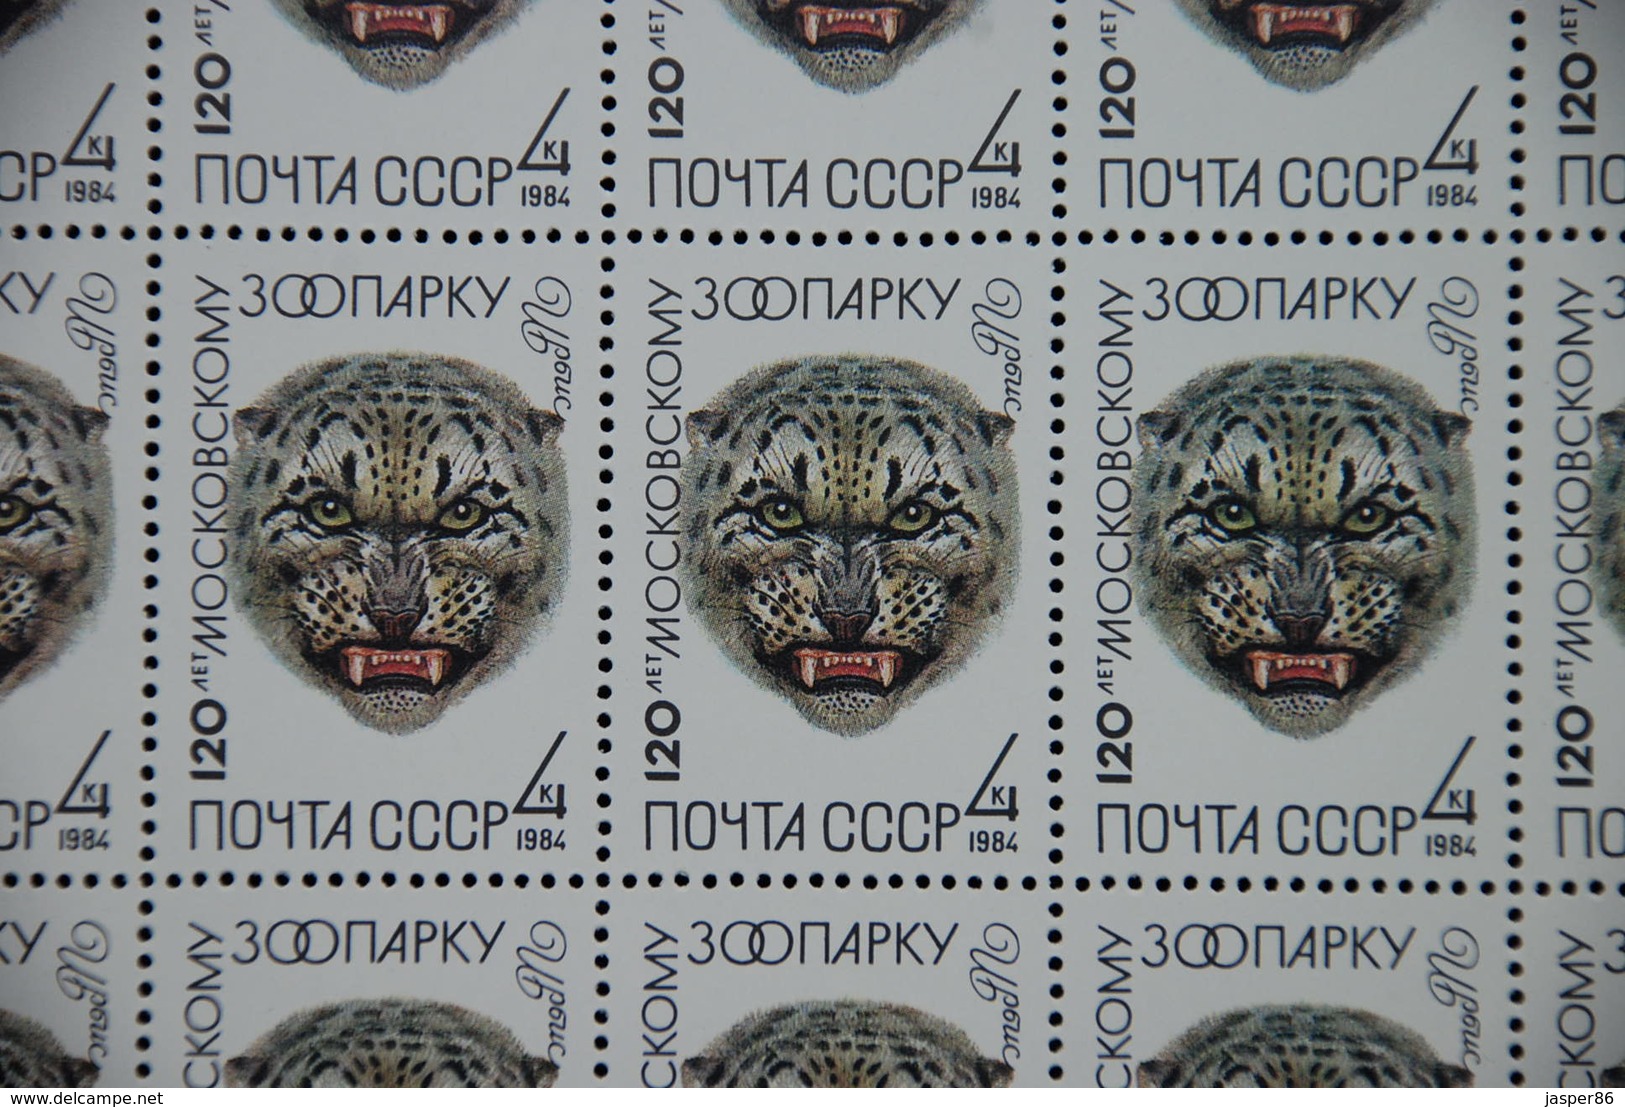 RUSSIA 1984 MNH Sc 5226-30, Mi 5356-60 Macaw, Crane, Leopard Sheets CV46.80 EU - Hojas Completas